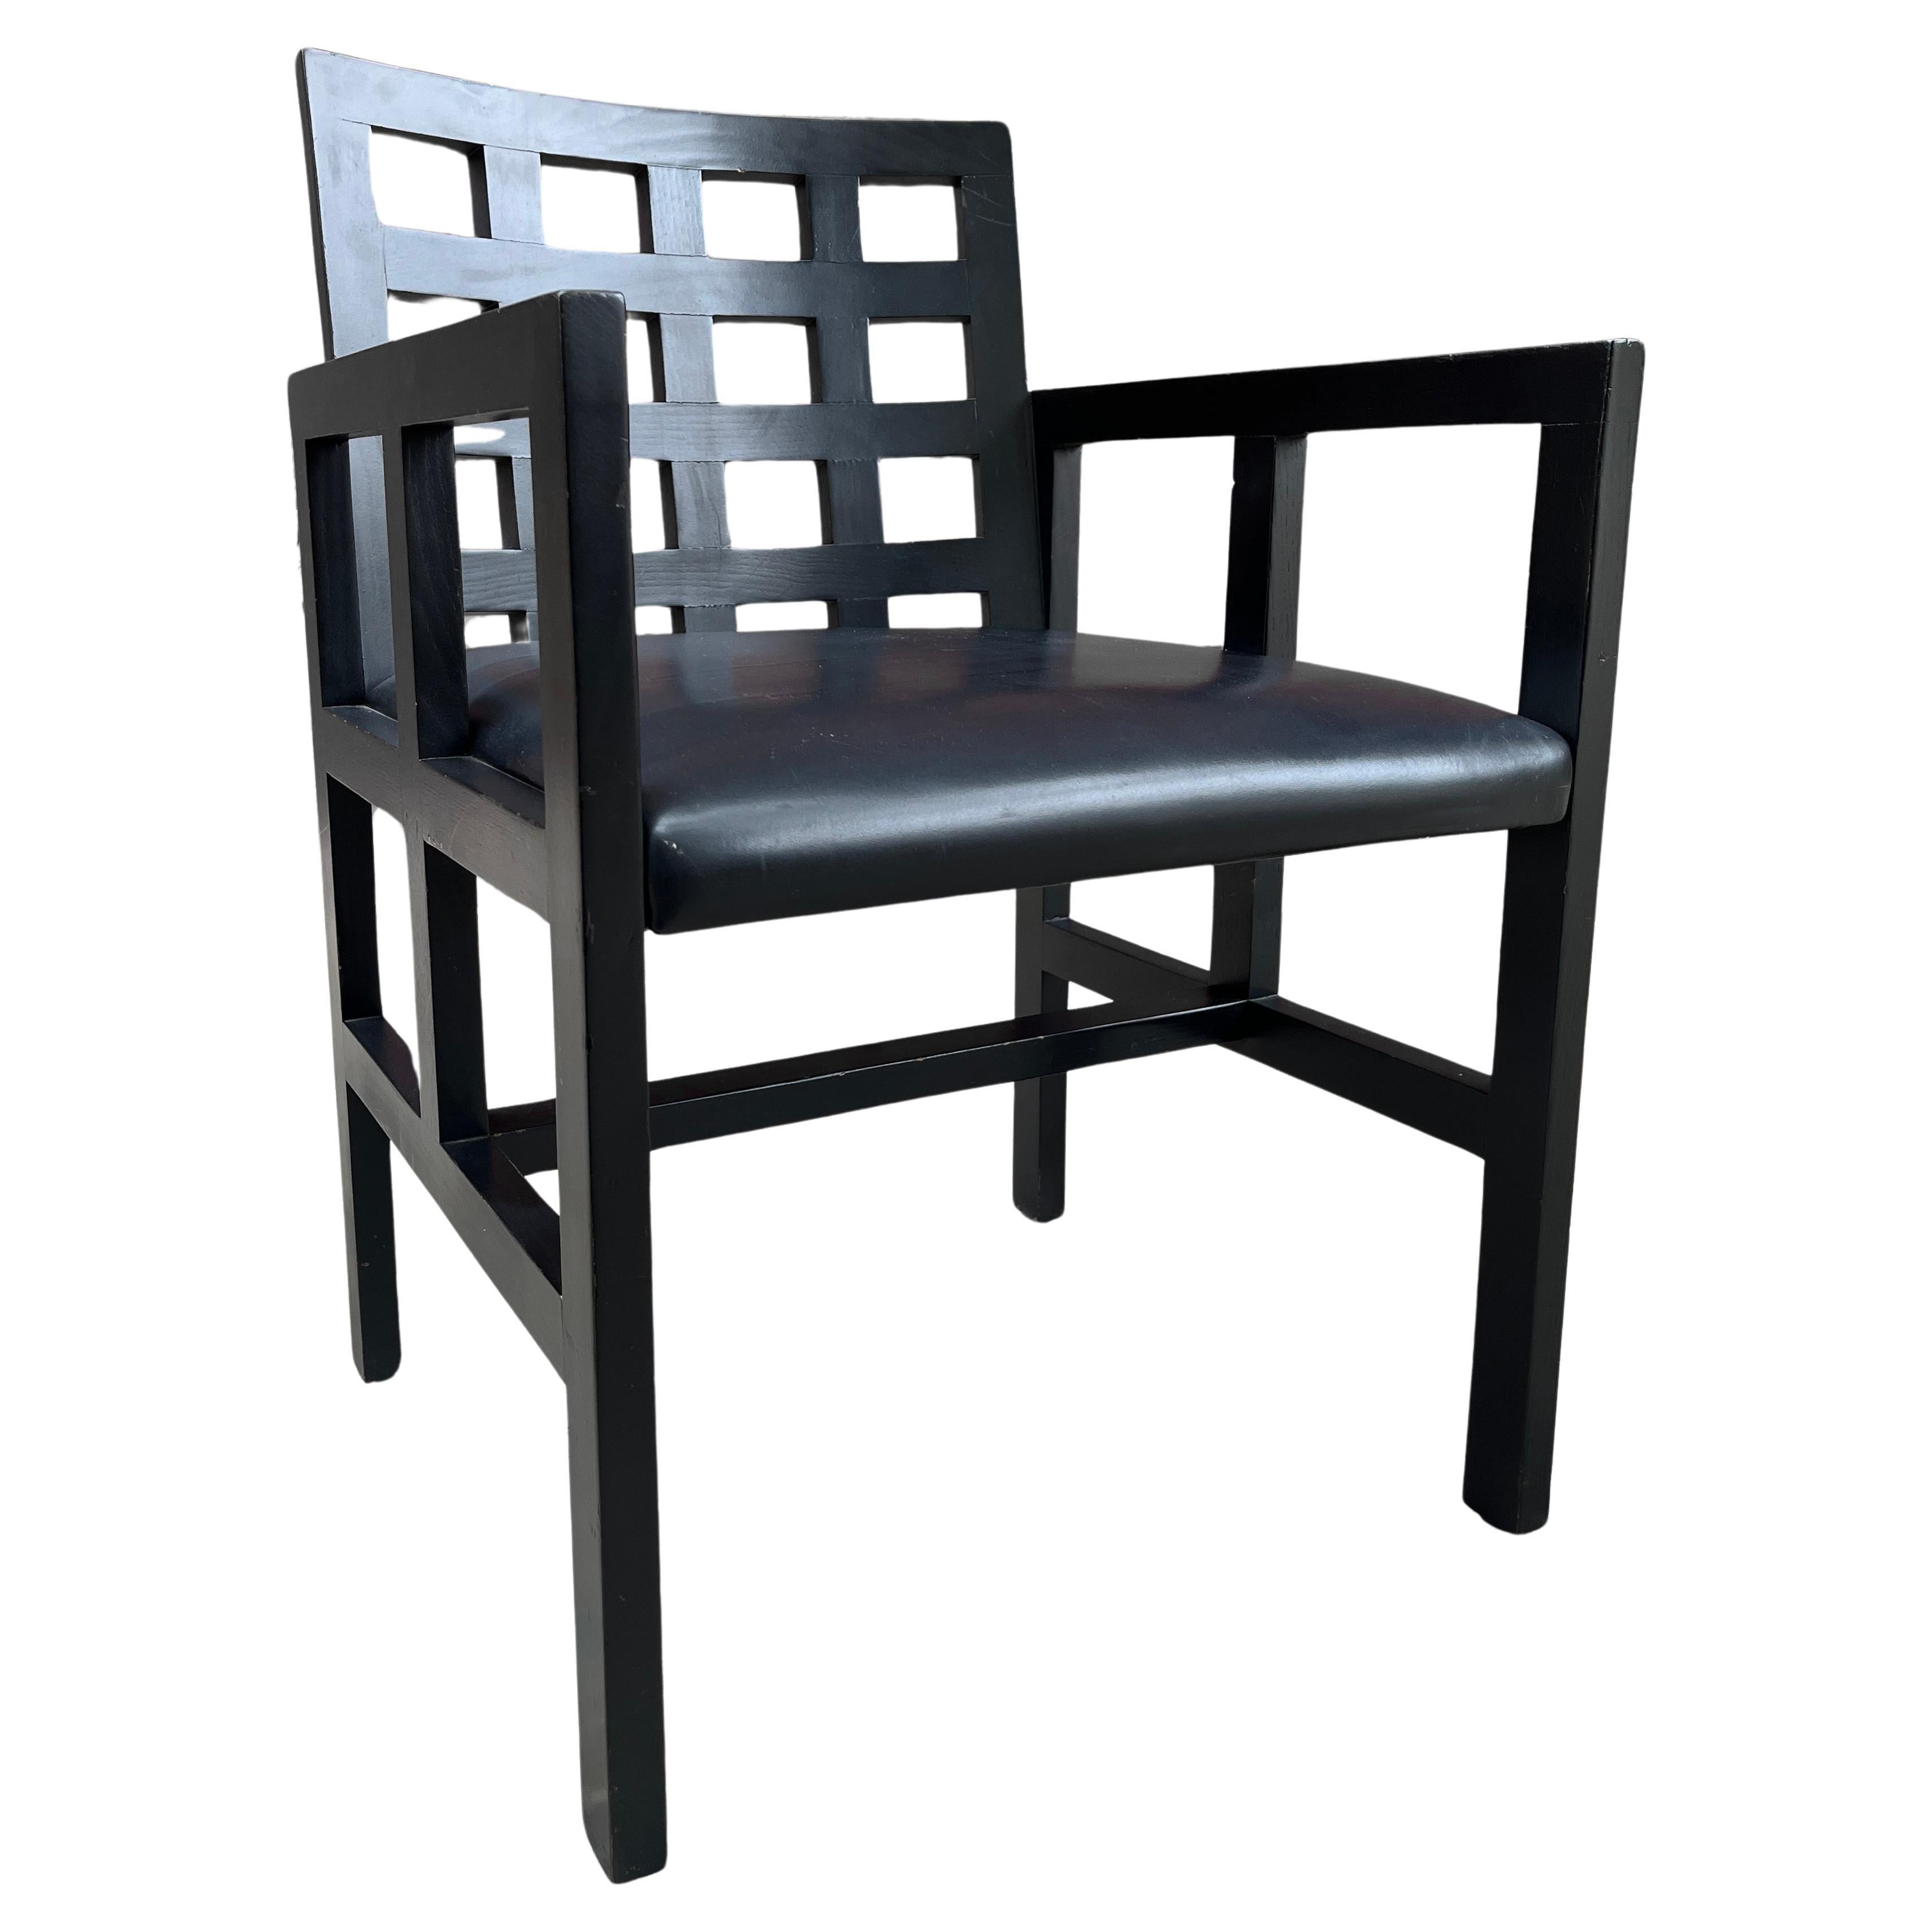 Nous vous présentons ce rare fauteuil 1515, entièrement d'origine, réalisé par Ward Bennett pour Brickel Associates. Cette chaise magnifiquement construite est d'une qualité exceptionnelle et présente un cadre en frêne massif avec une finition noire